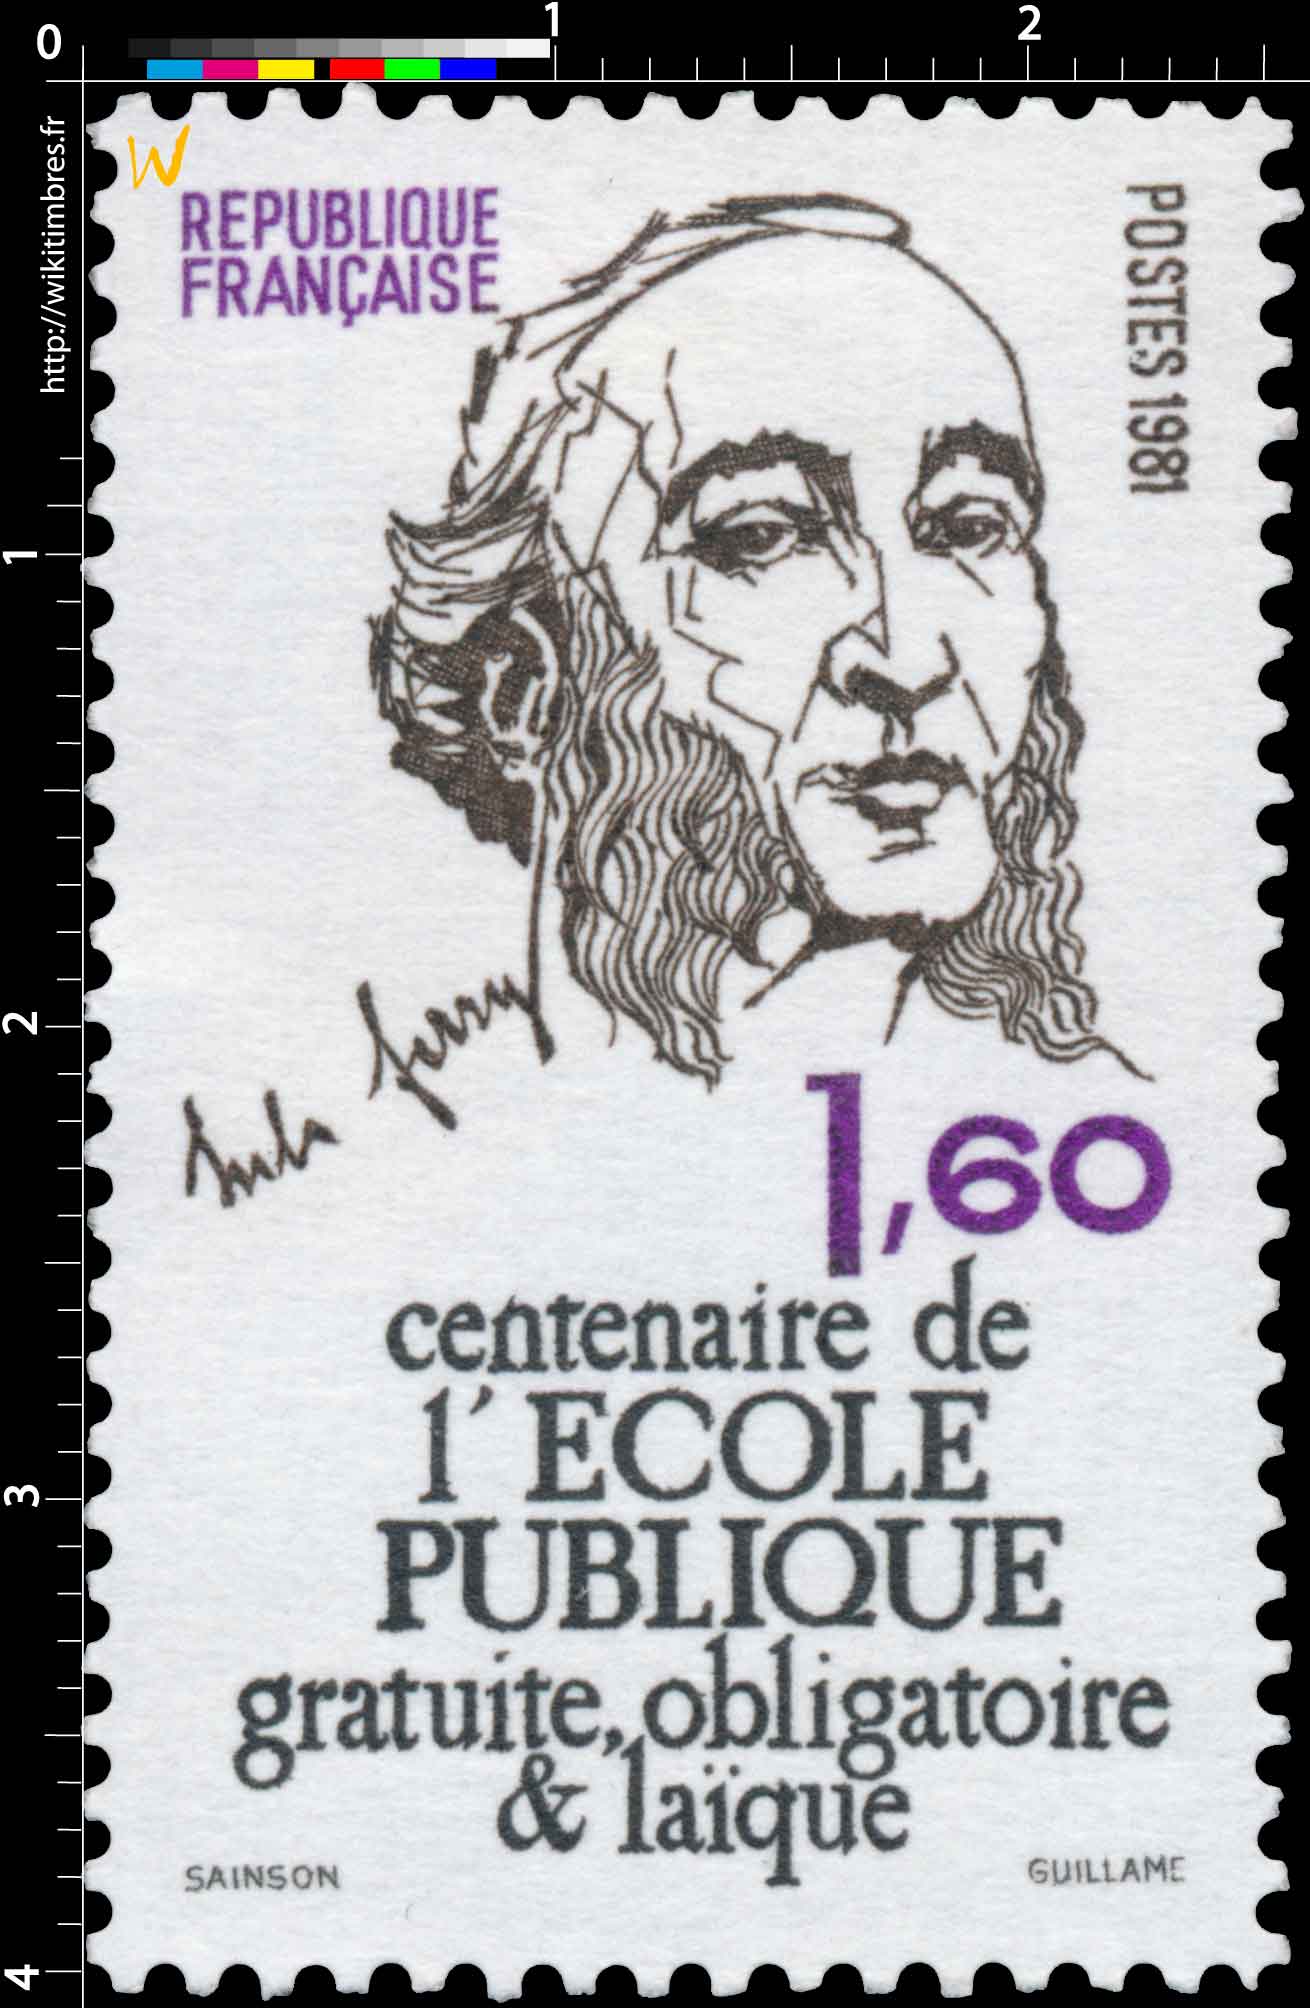 1981 Jules Ferry centenaire de l'ÉCOLE PUBLIQUE gratuite, obligatoire & laïque